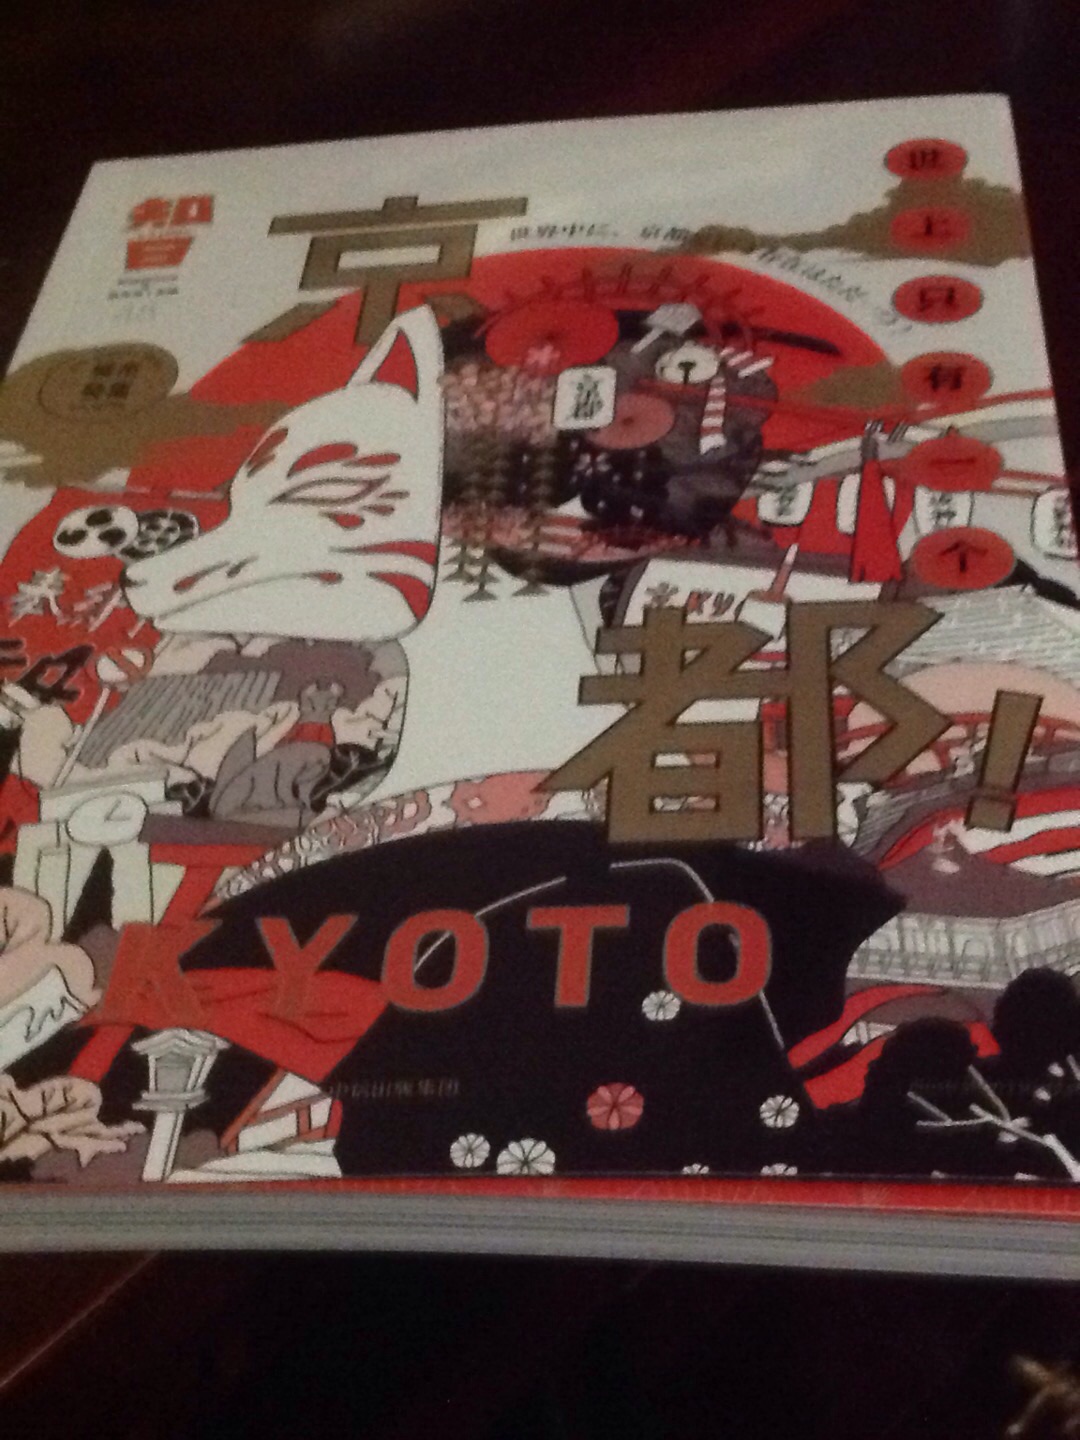 大开本，图很多，像是本杂志，内容涵盖面广，对喜欢~京都的读者很适合